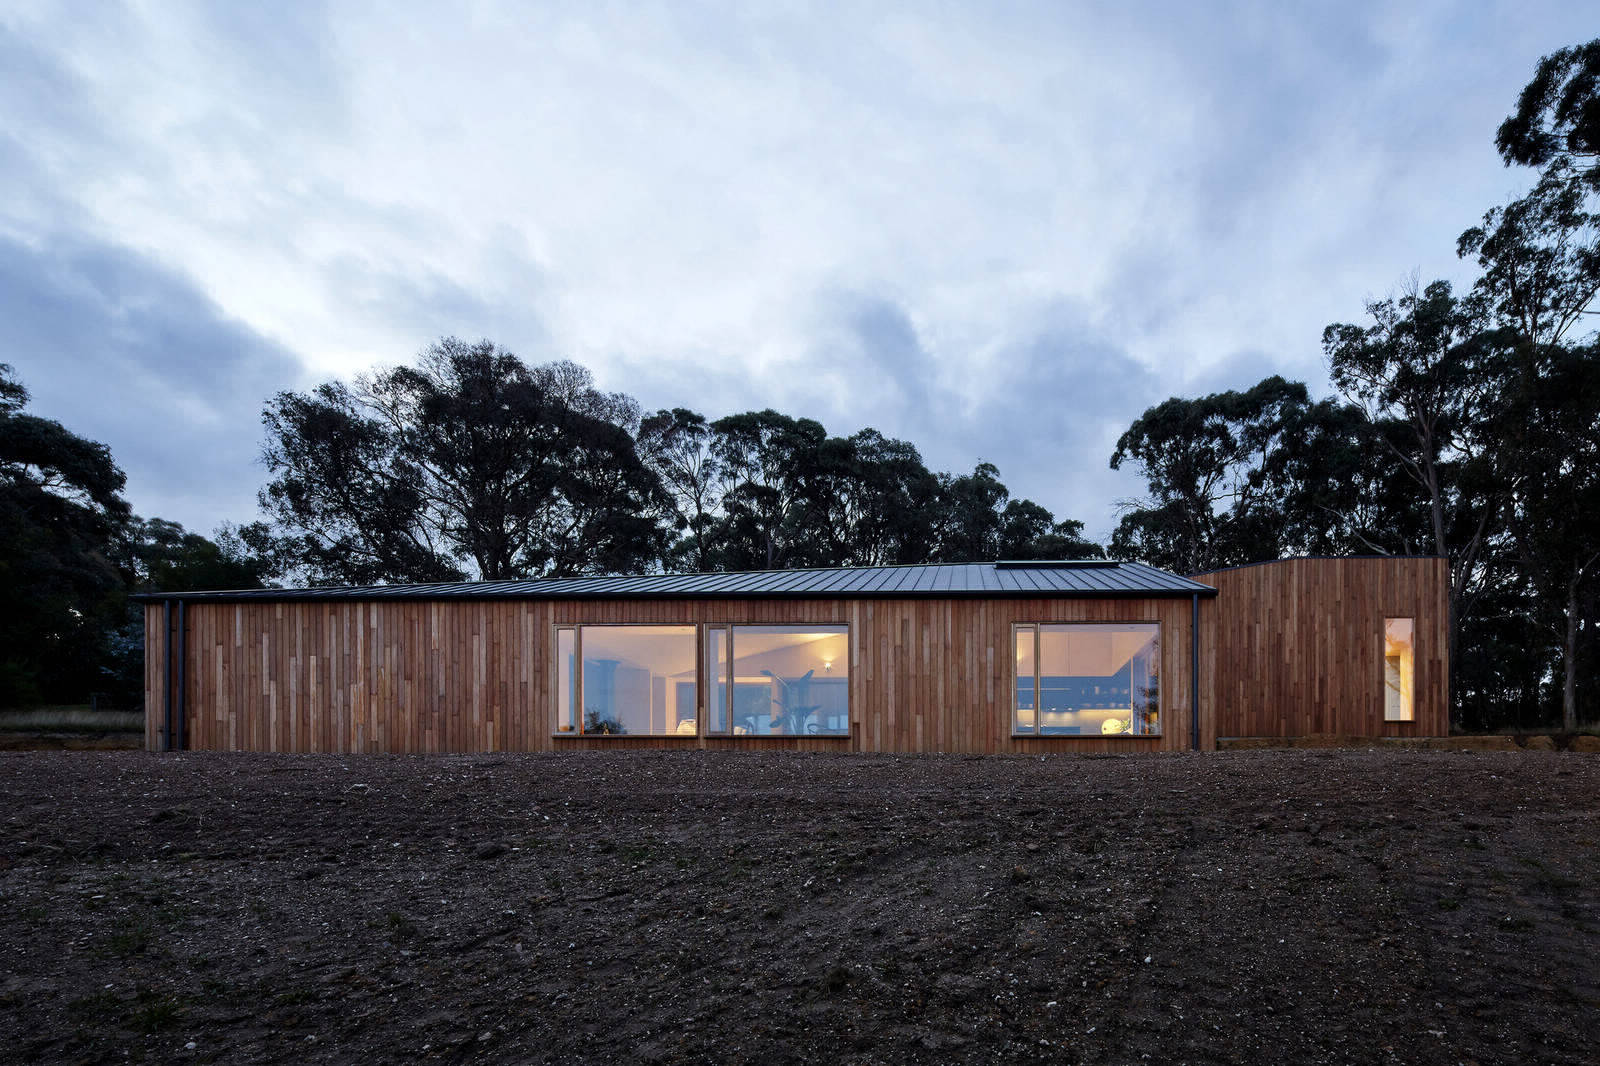 Семейный дом от студии Moloney Architects в Австралии